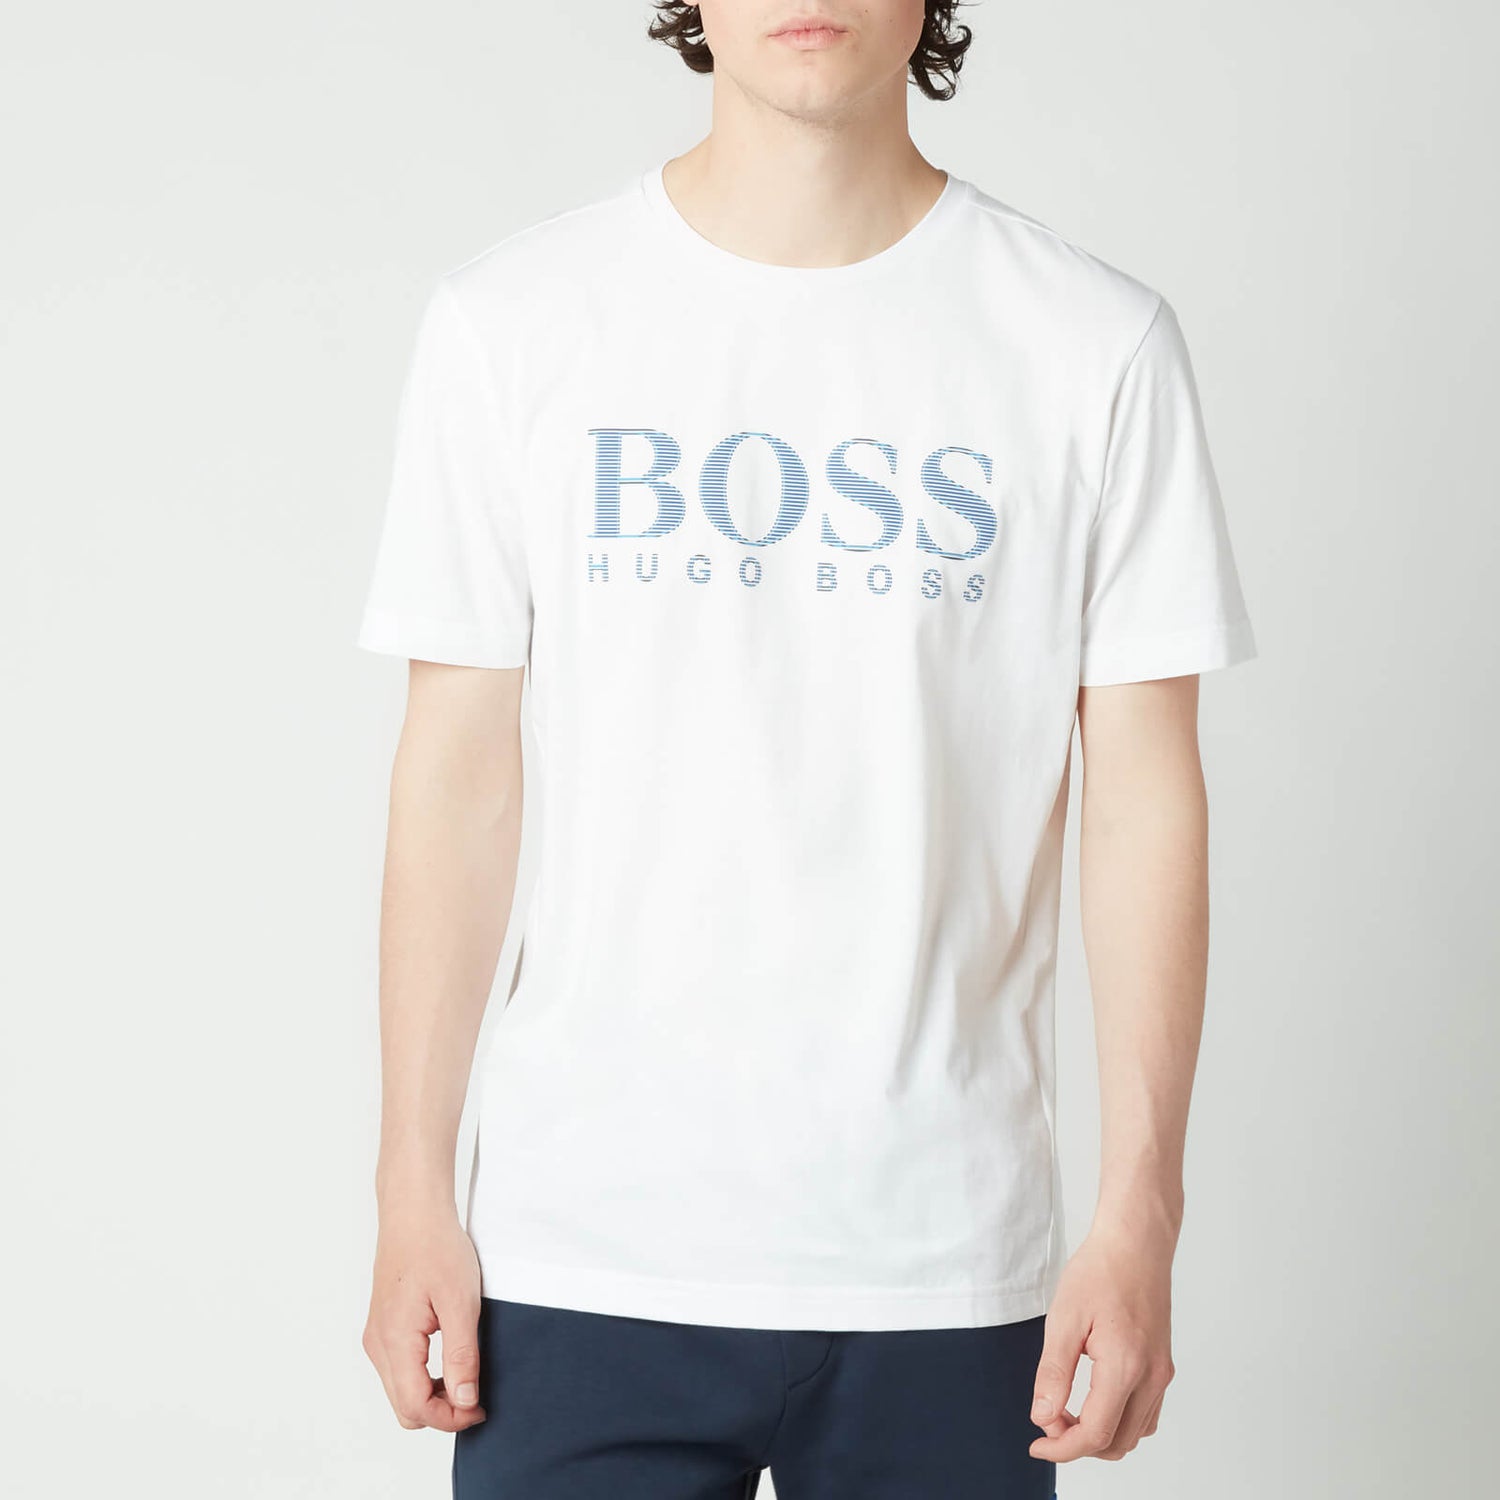 BOSS Athleisure Men's Tee 5 T-Shirt - White